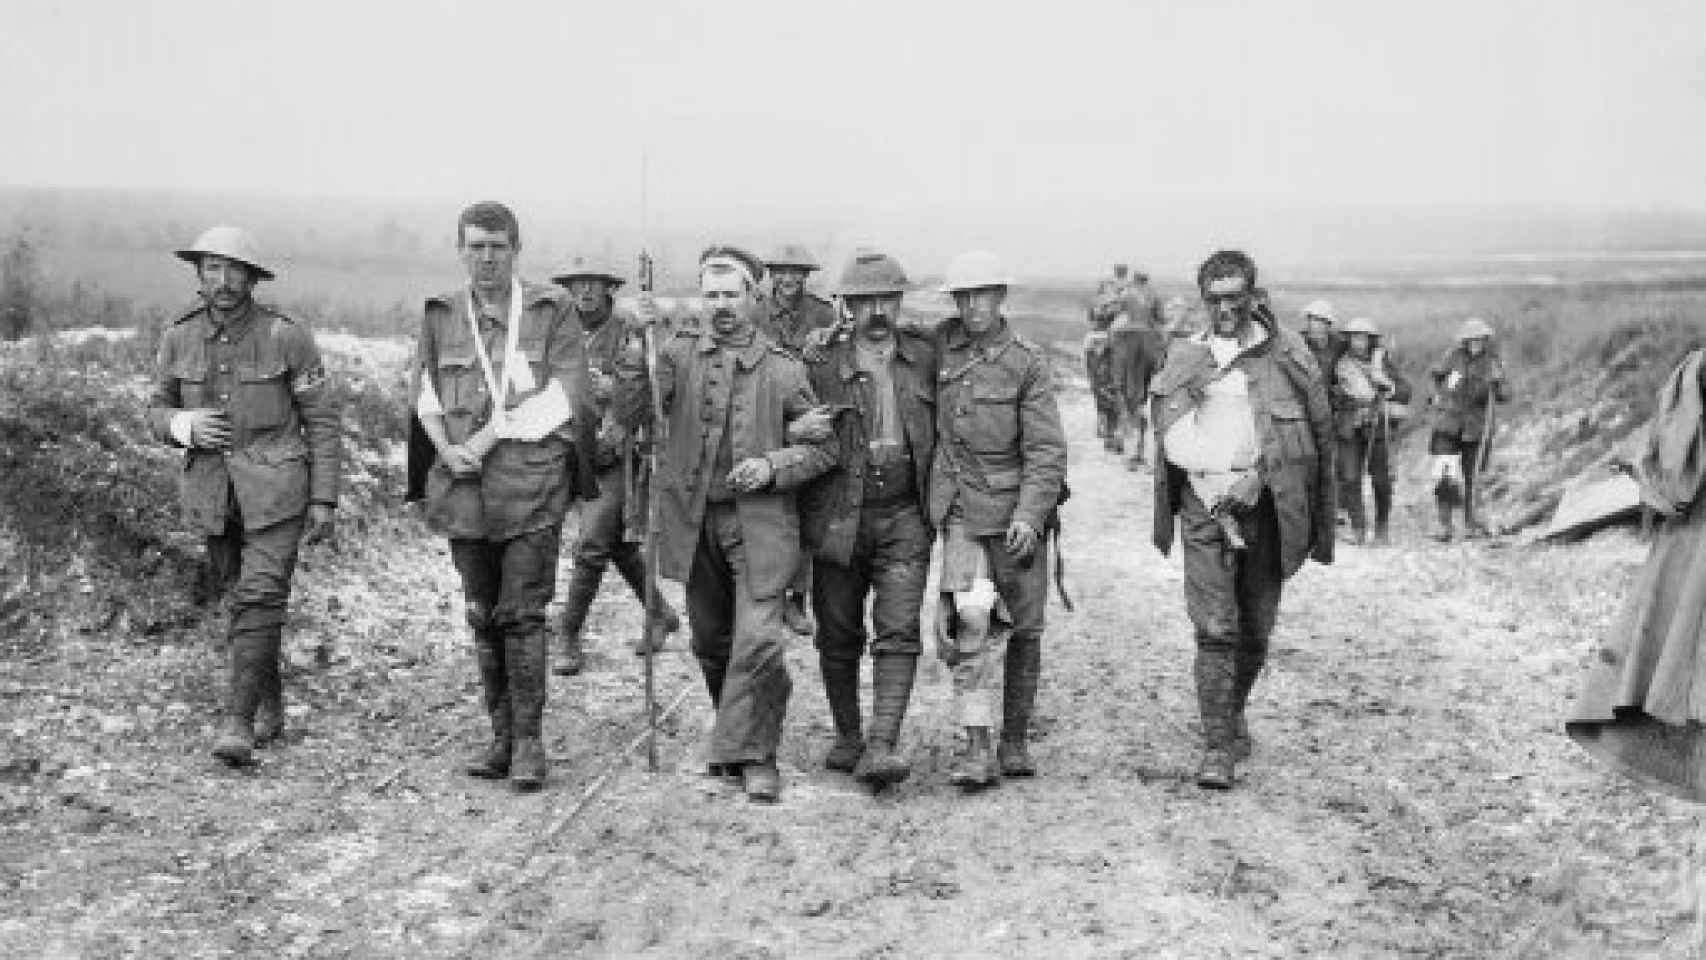 Image: Los vencidos. Por qué la Primera Guerra Mundial no concluyó del todo (1917-1923)